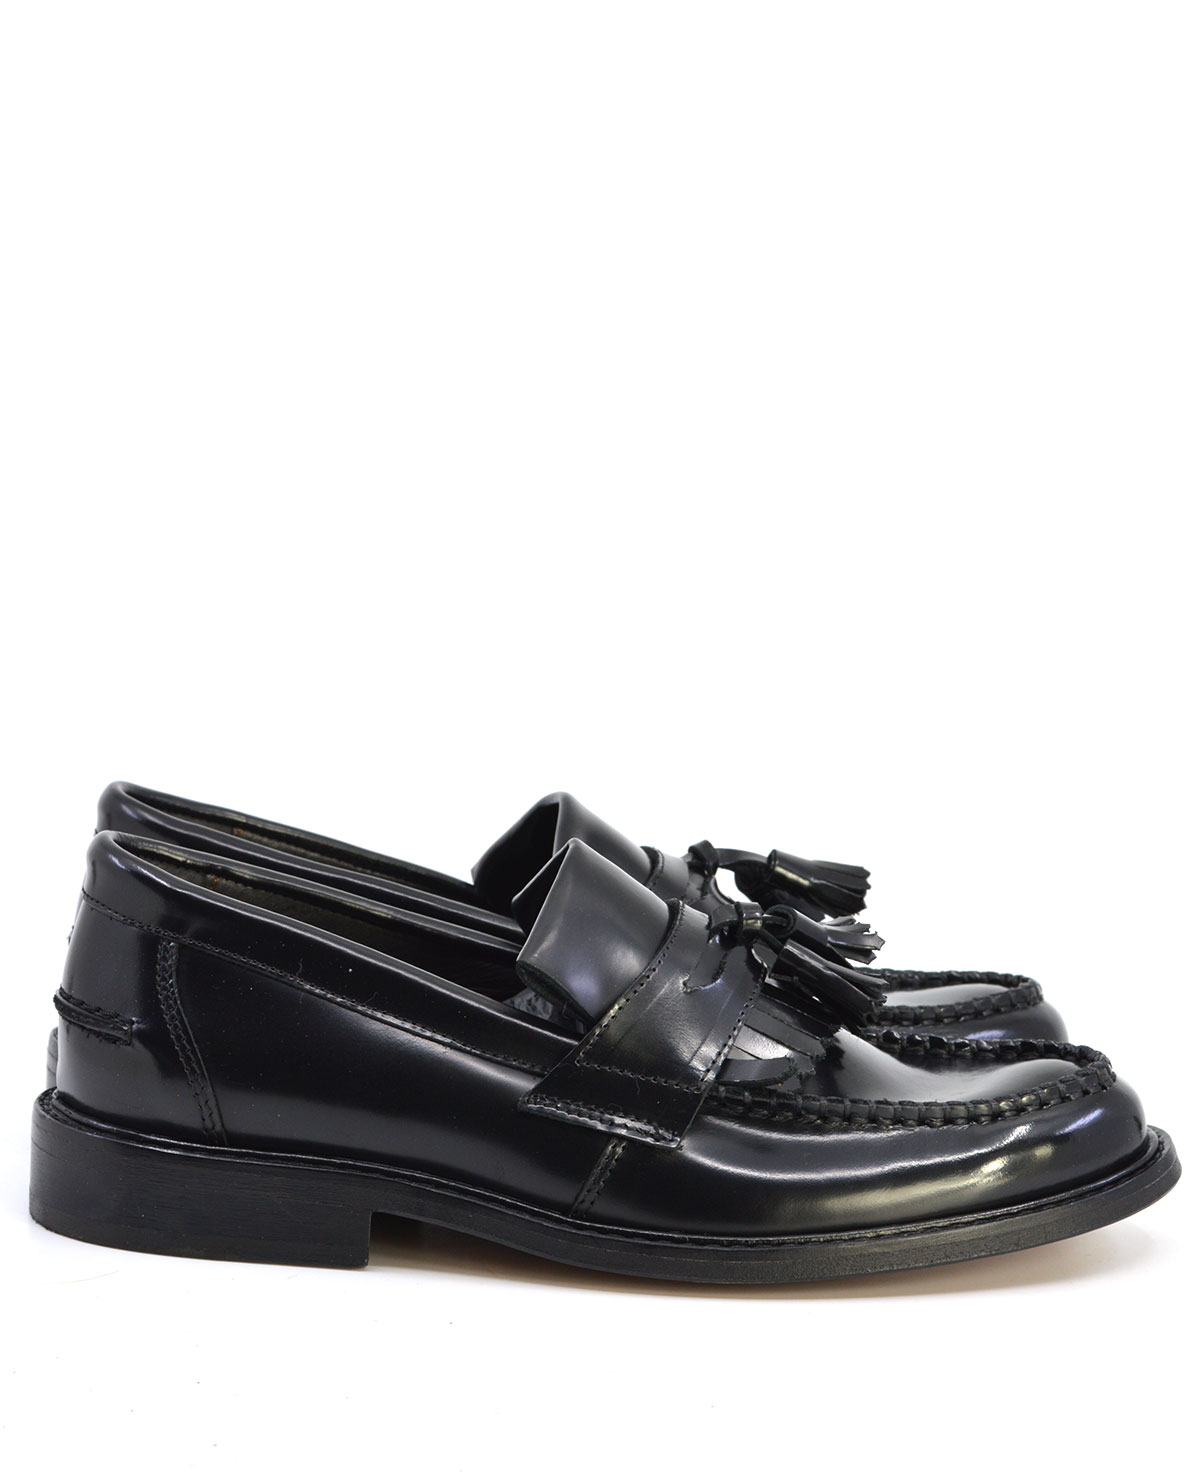 Ladies Princes – Black Tassel Loafers – Mod Ska Skinhead Style – Mod Shoes